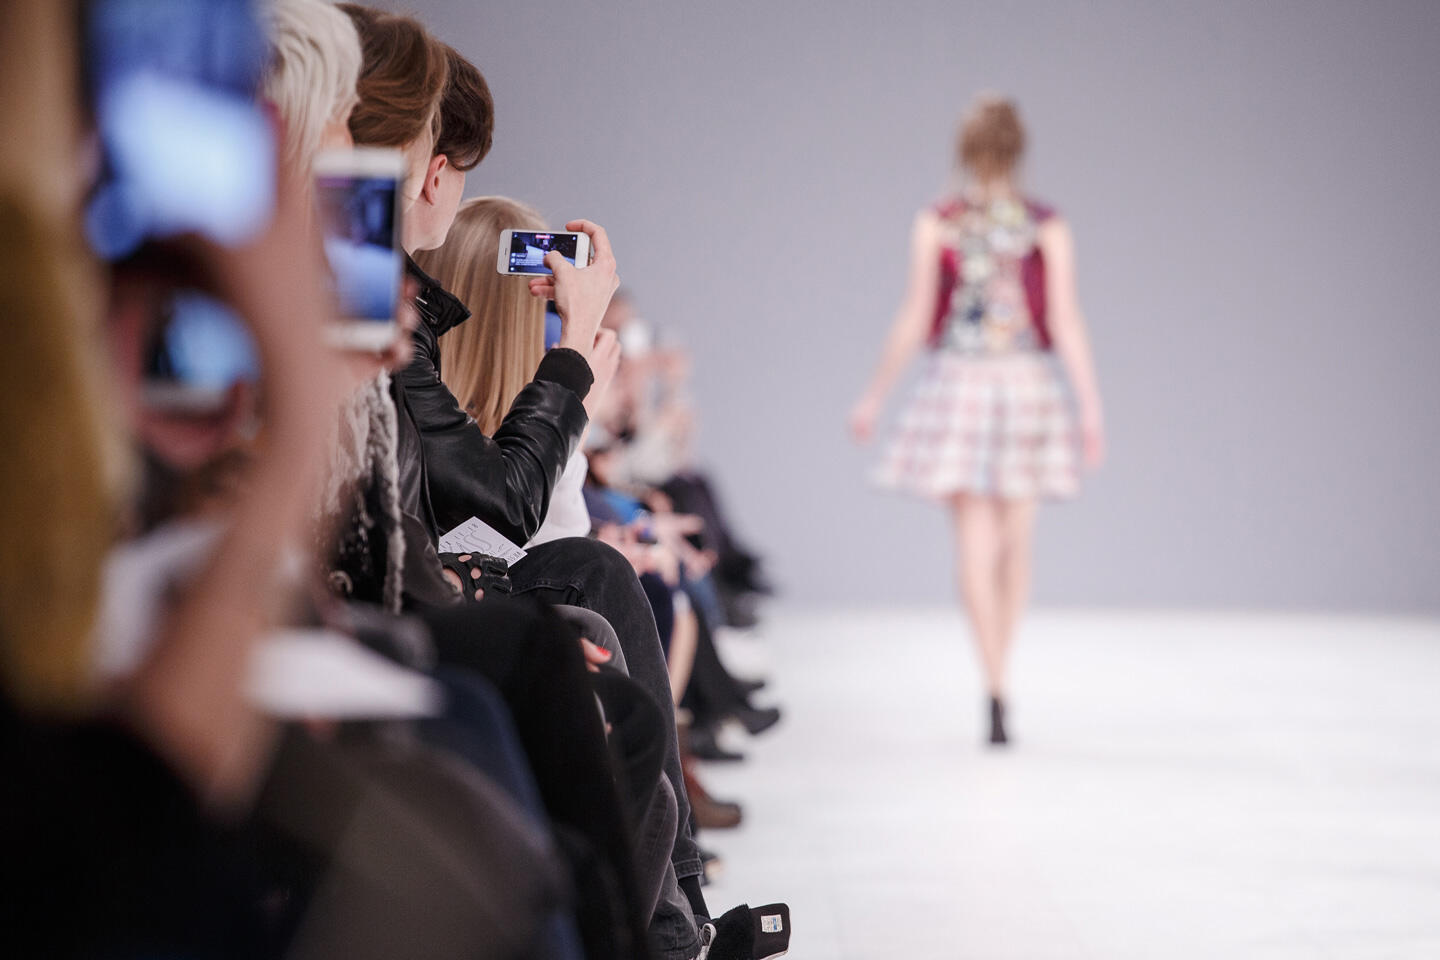 Spectateurs capturant avec leurs smartphones un défilé de mode lors de la Fashion Week de Paris. En premier plan, une rangée de personnes assises, certaines prenant des photos d'un mannequin en robe courte et colorée marchant sur le podium éclairé.